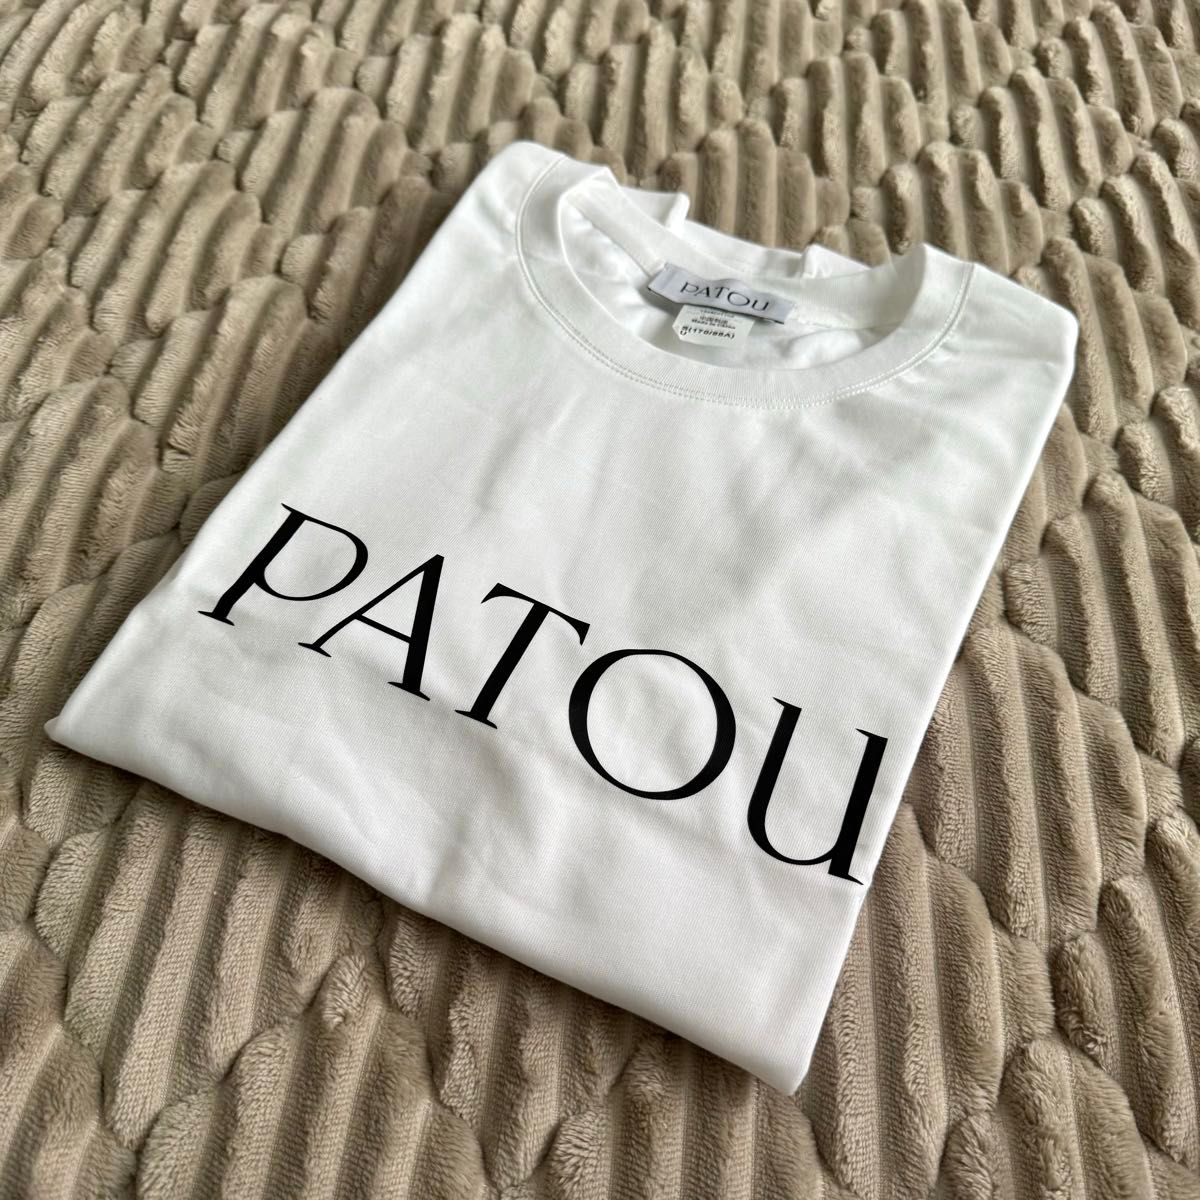 【新品】Patou パトゥ ロゴ Tシャツ ホワイト S 半袖